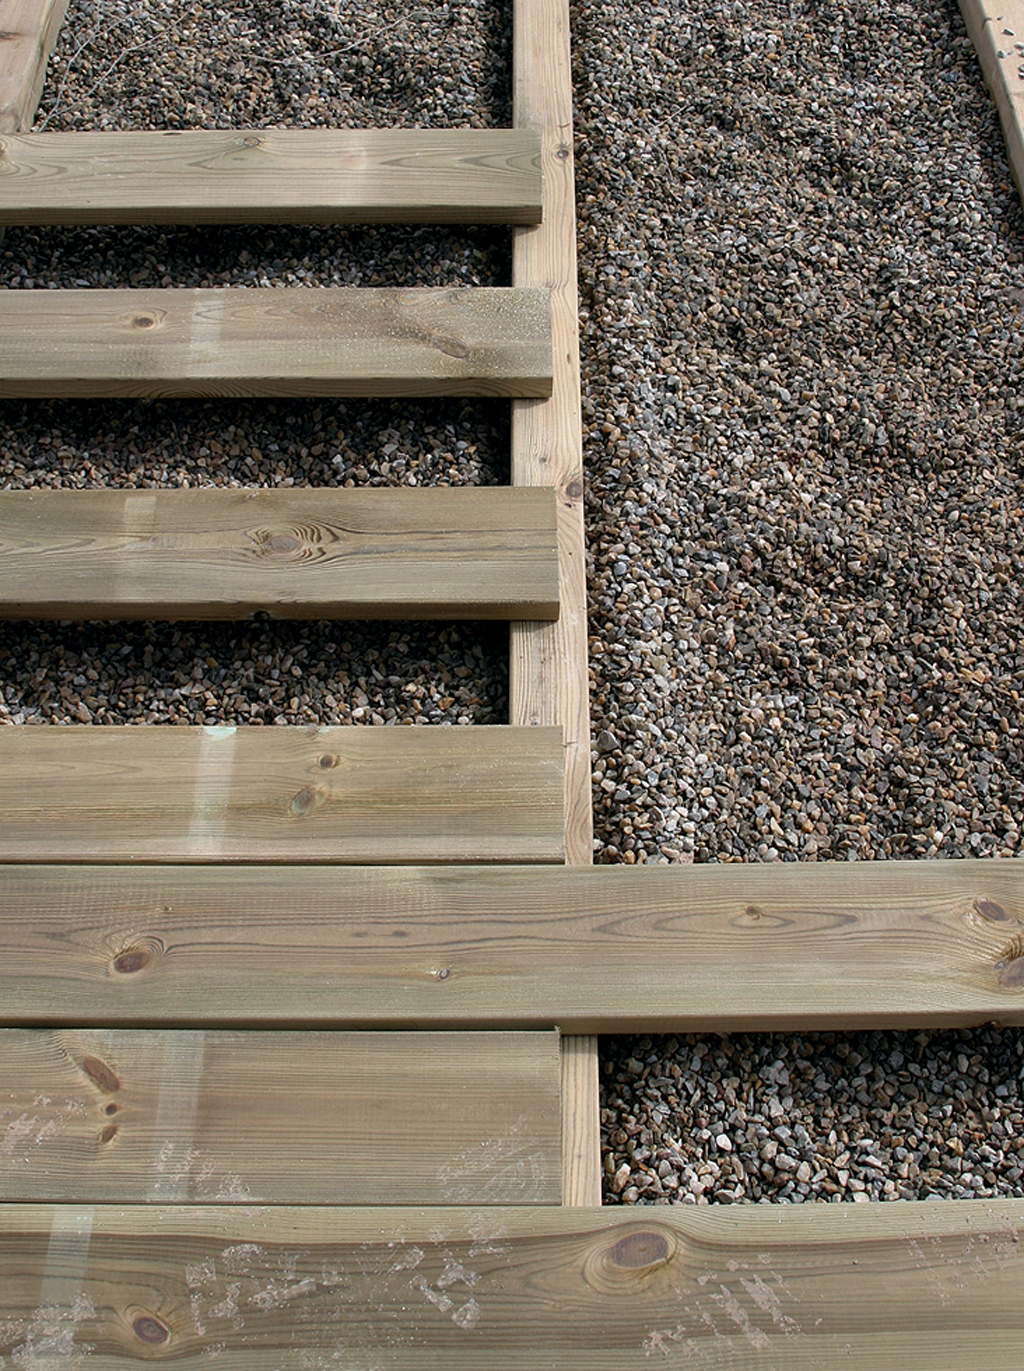 Comment mettre en place les lames d'une terrasse en bois ?